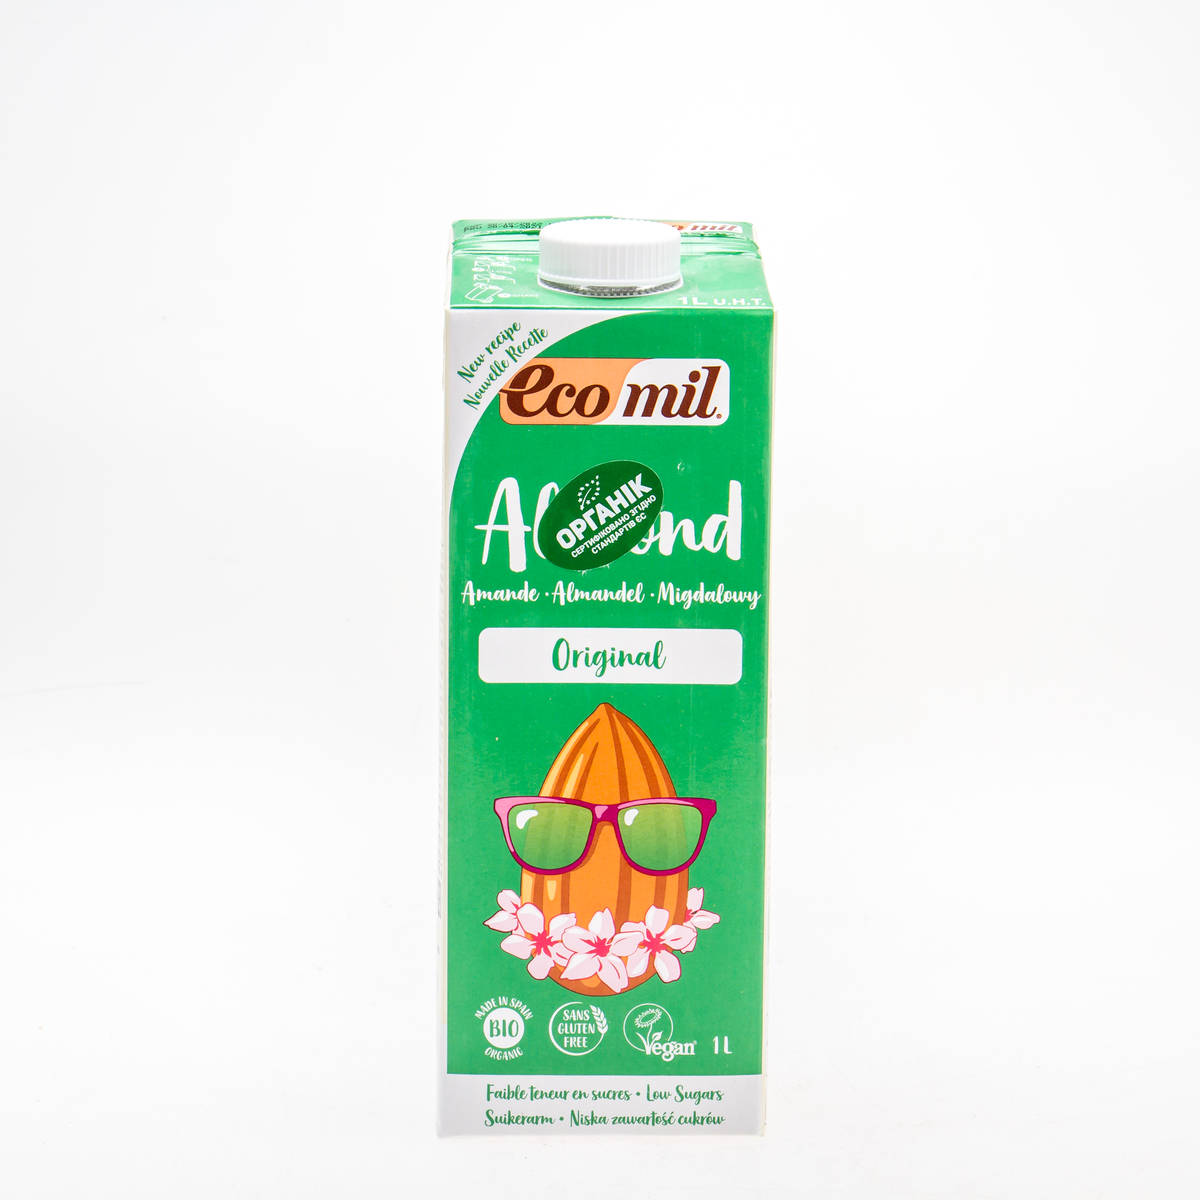 Органічне рослинне молоко з мигдалю з сиропом агави, 1л - купить в интернет-магазине Юнимед